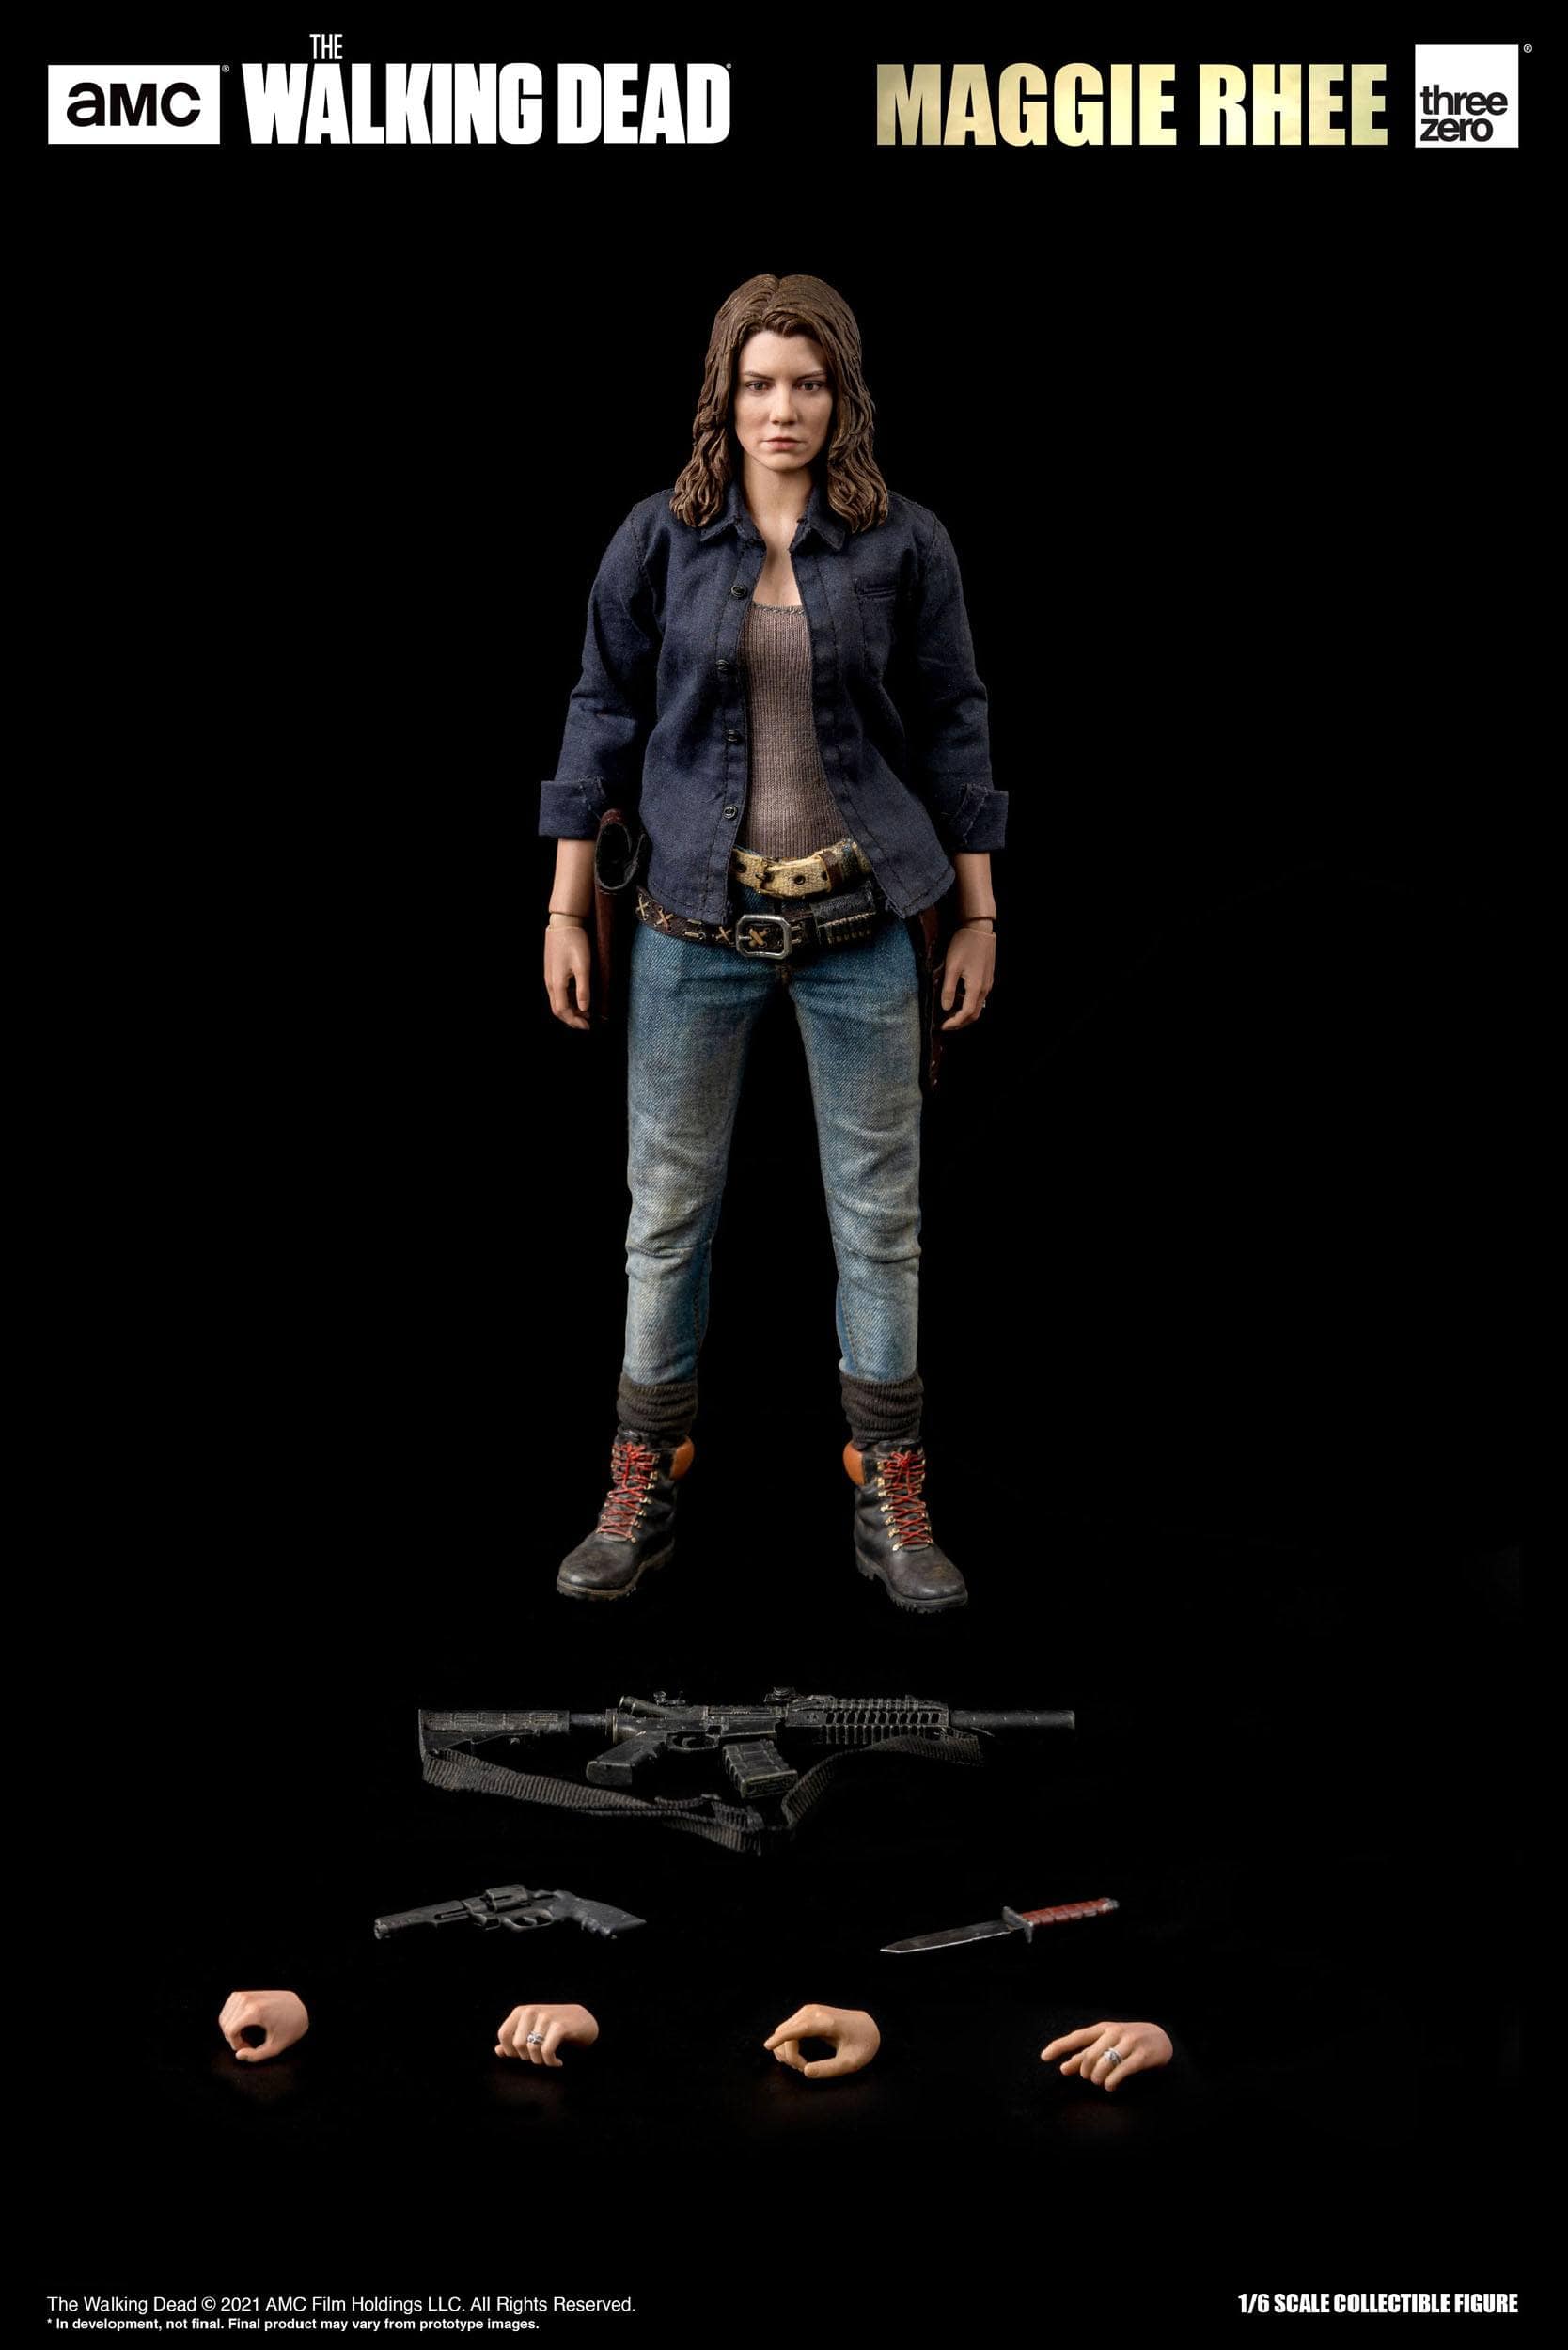 The Walking Dead Action Figure Maggie Rhee - 28 CM - 1:6